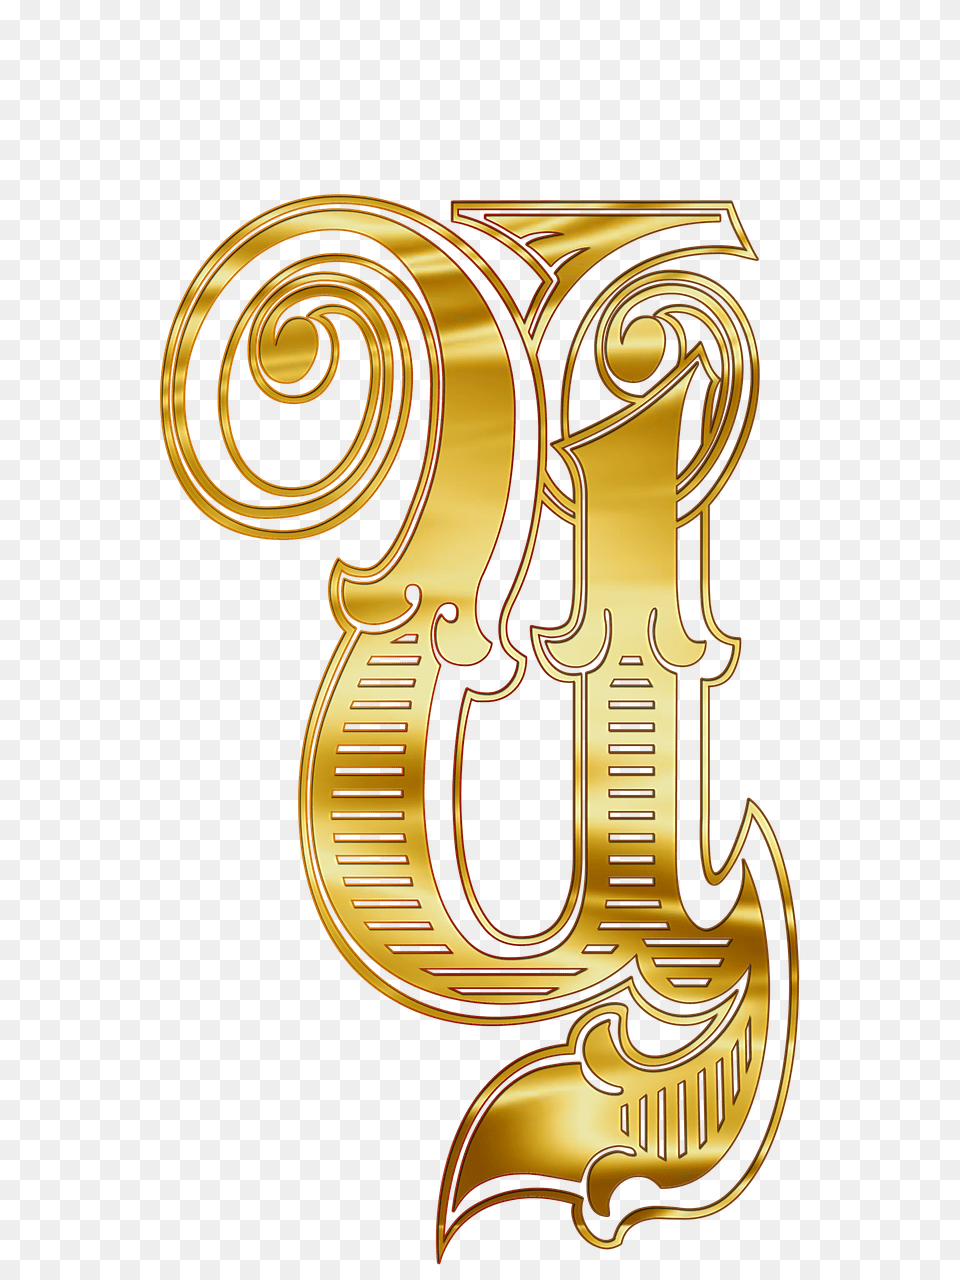 Cyrillic Capital Letter Ts, Symbol, Text, Number, Emblem Png Image